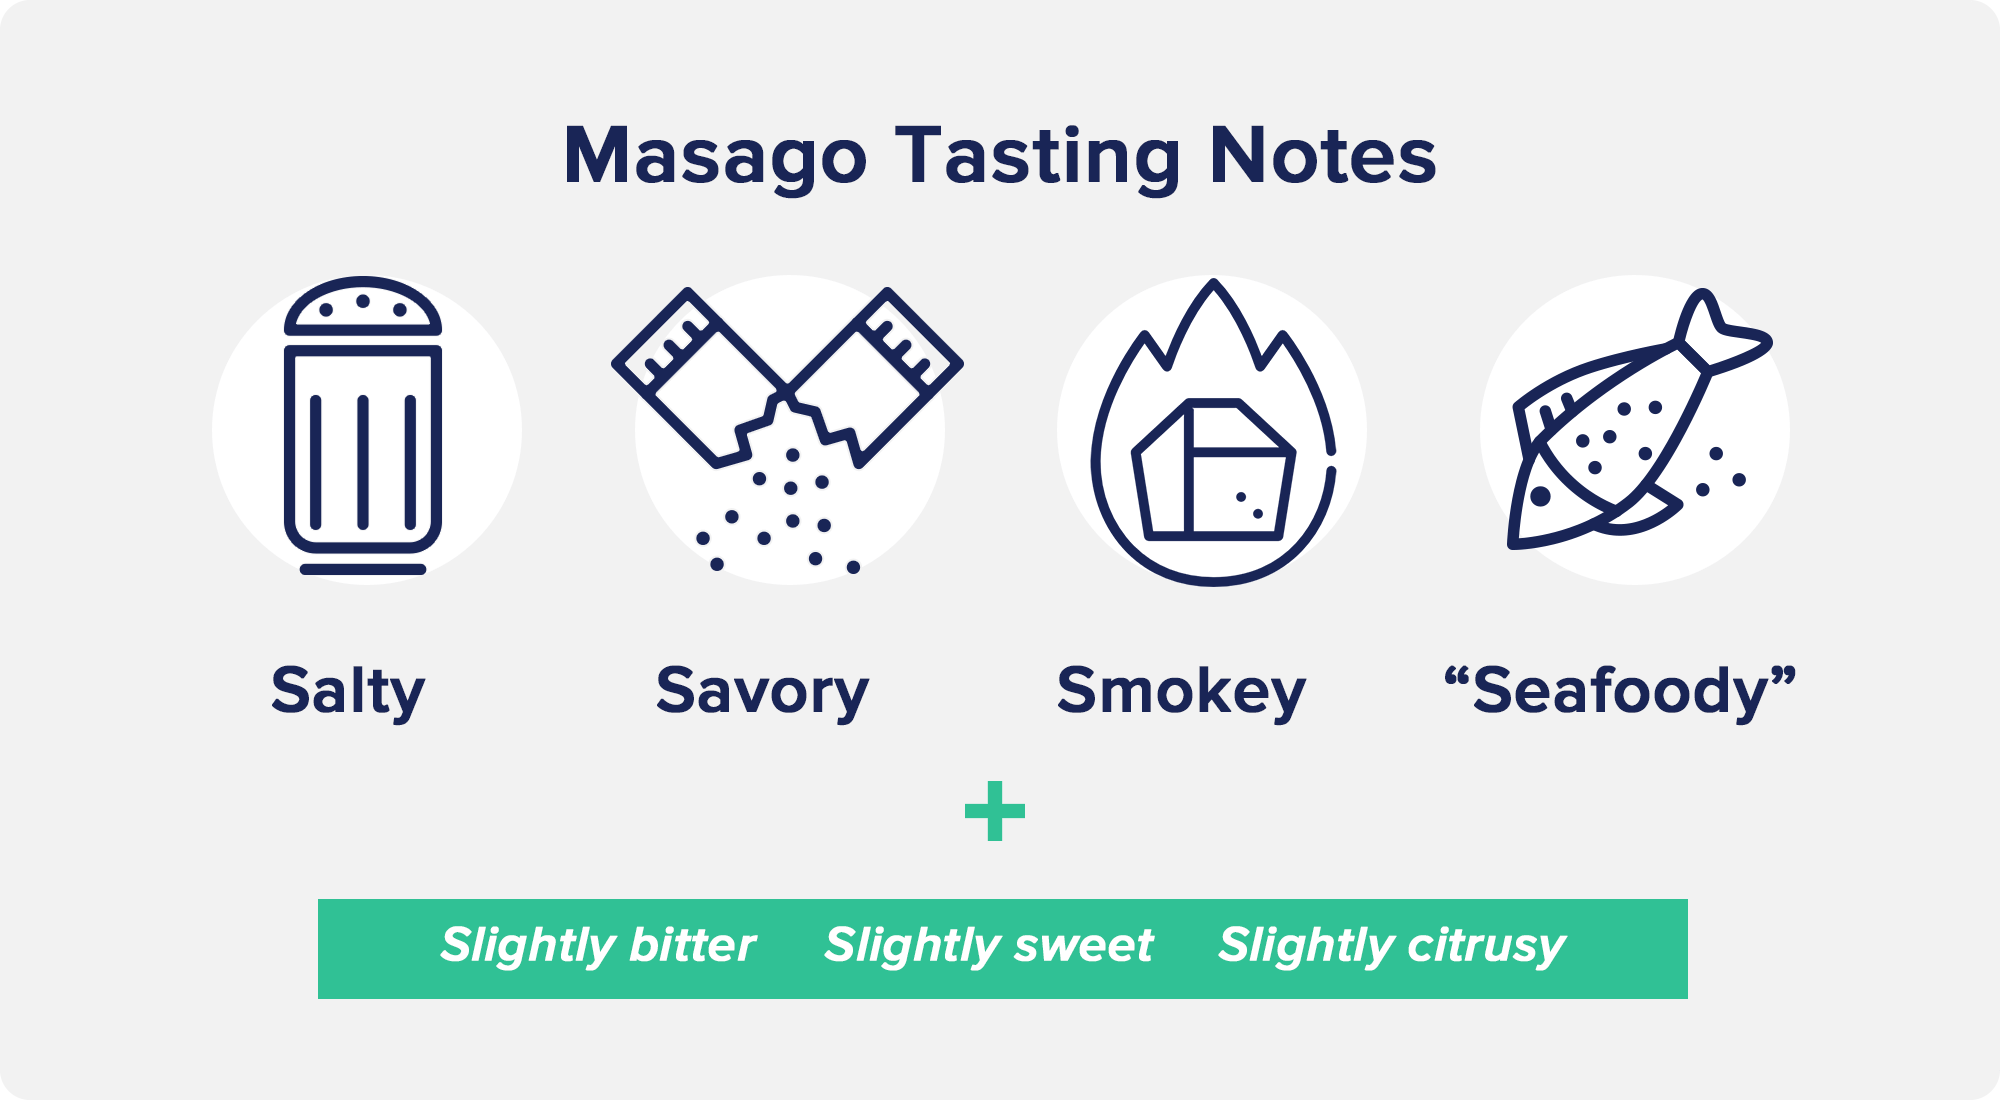 Masago Tasting Notes